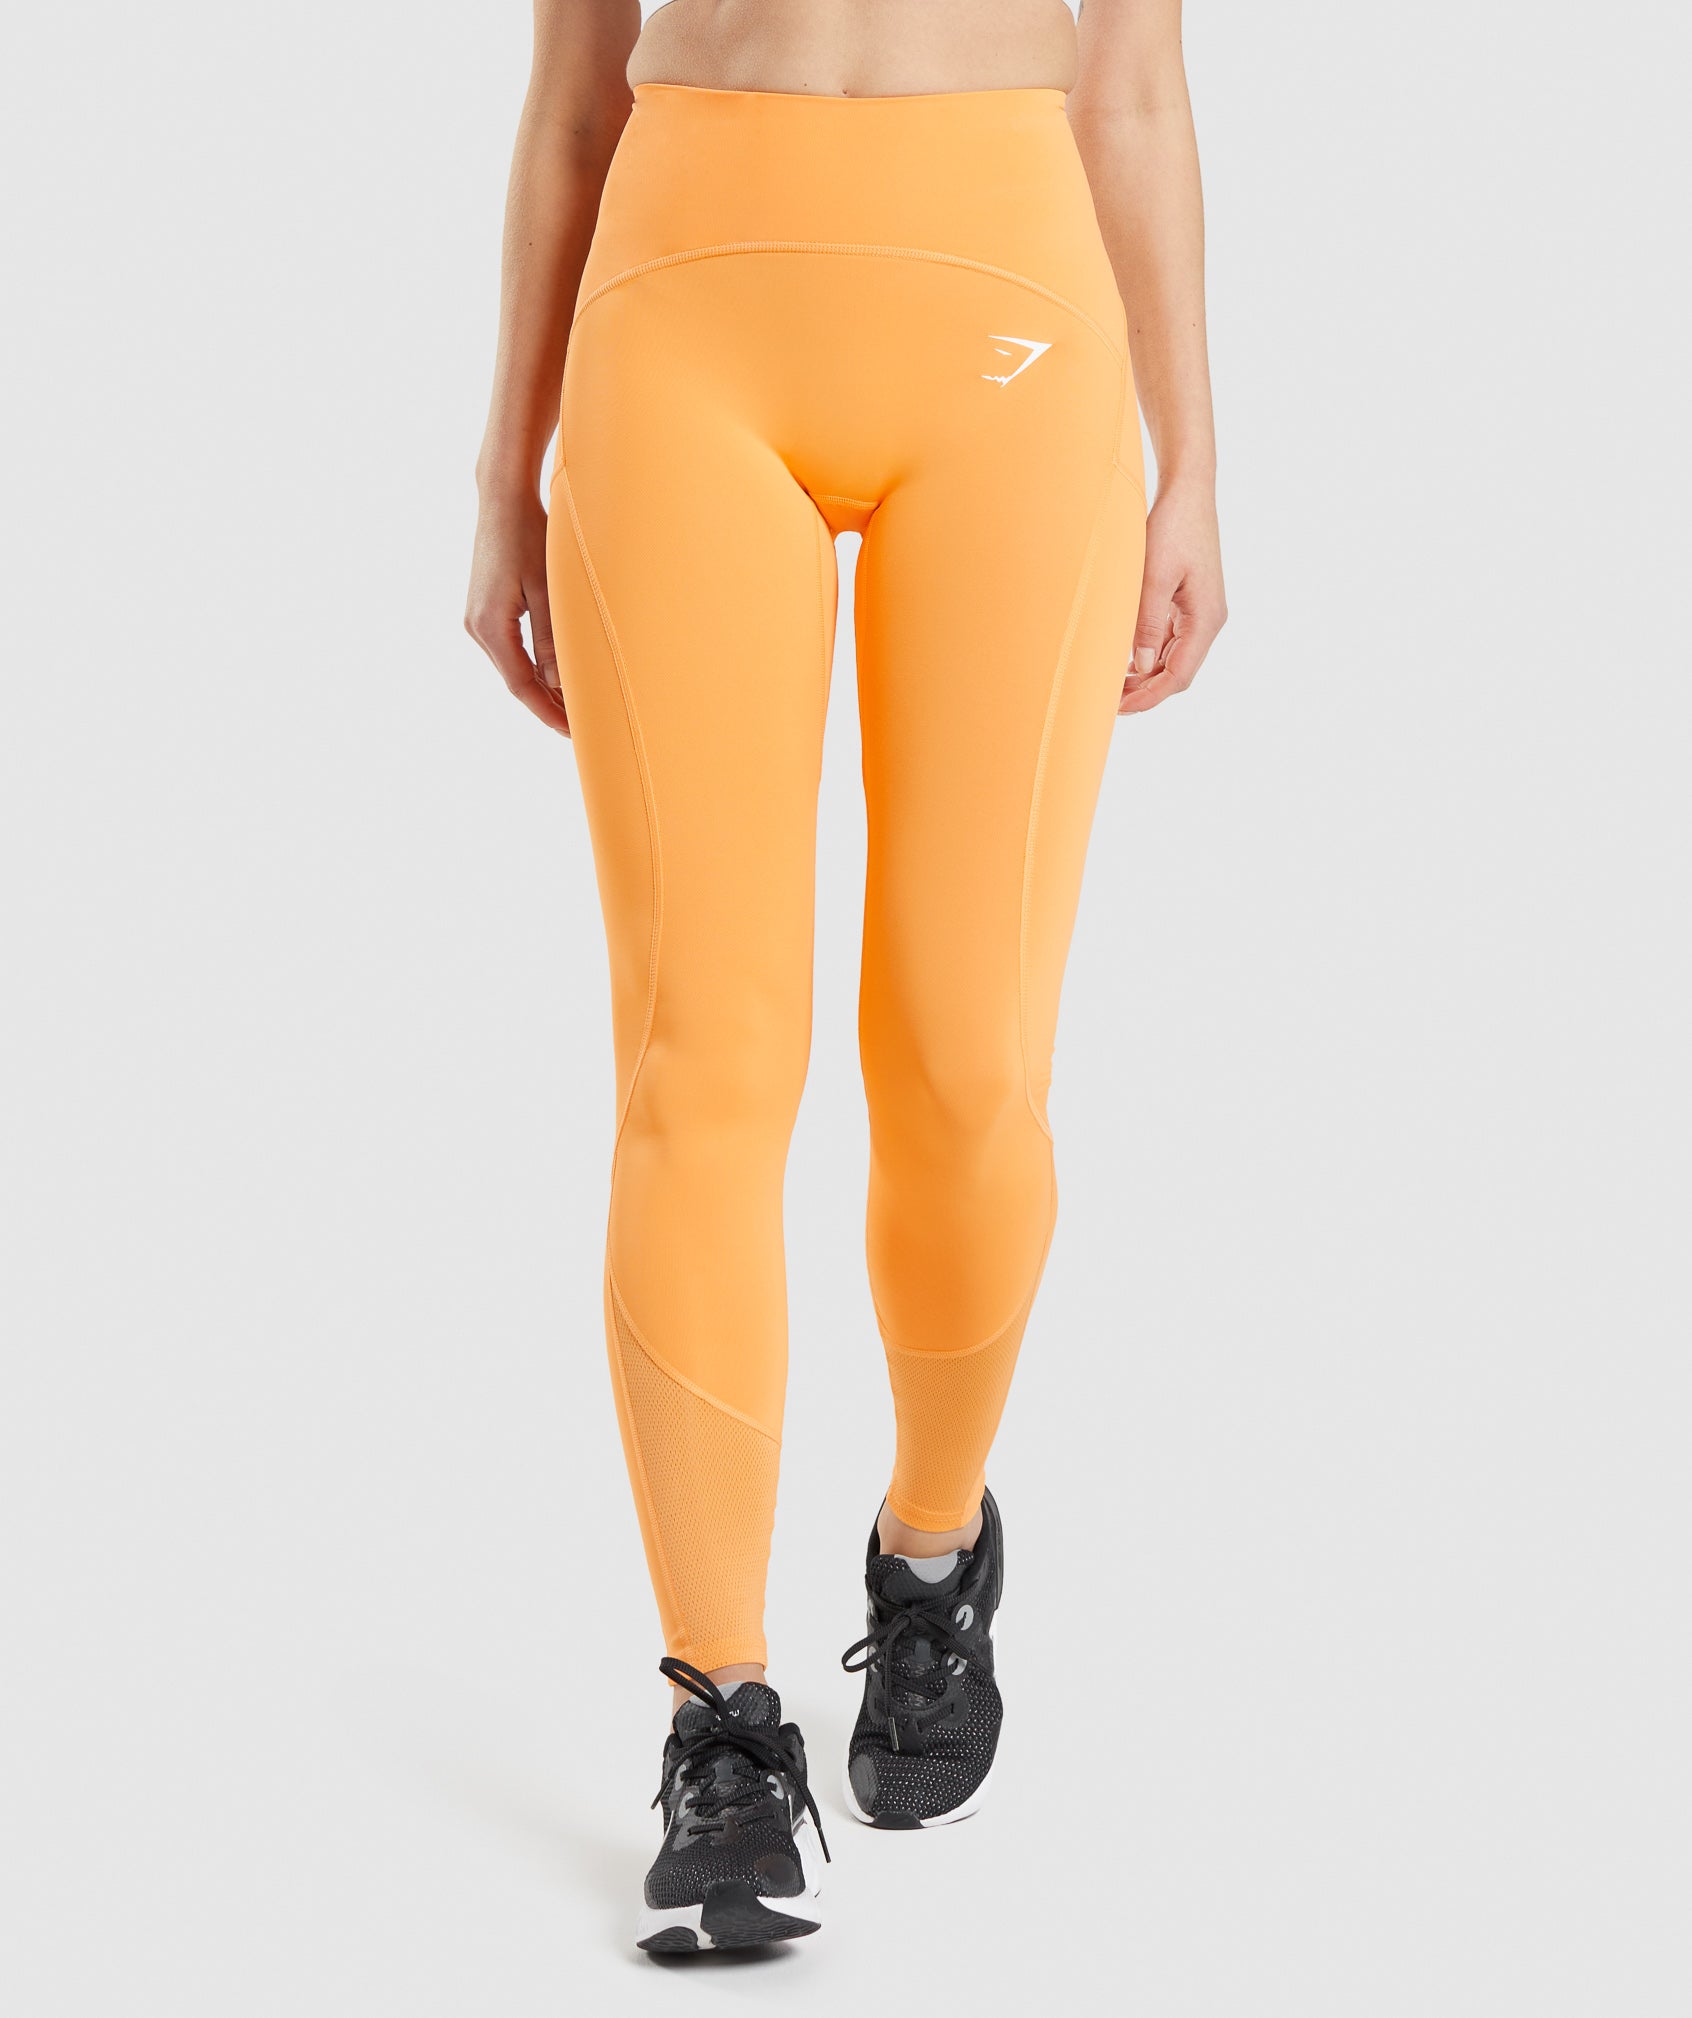 Gymshark Pulse Mesh Leggings - Apricot Orange